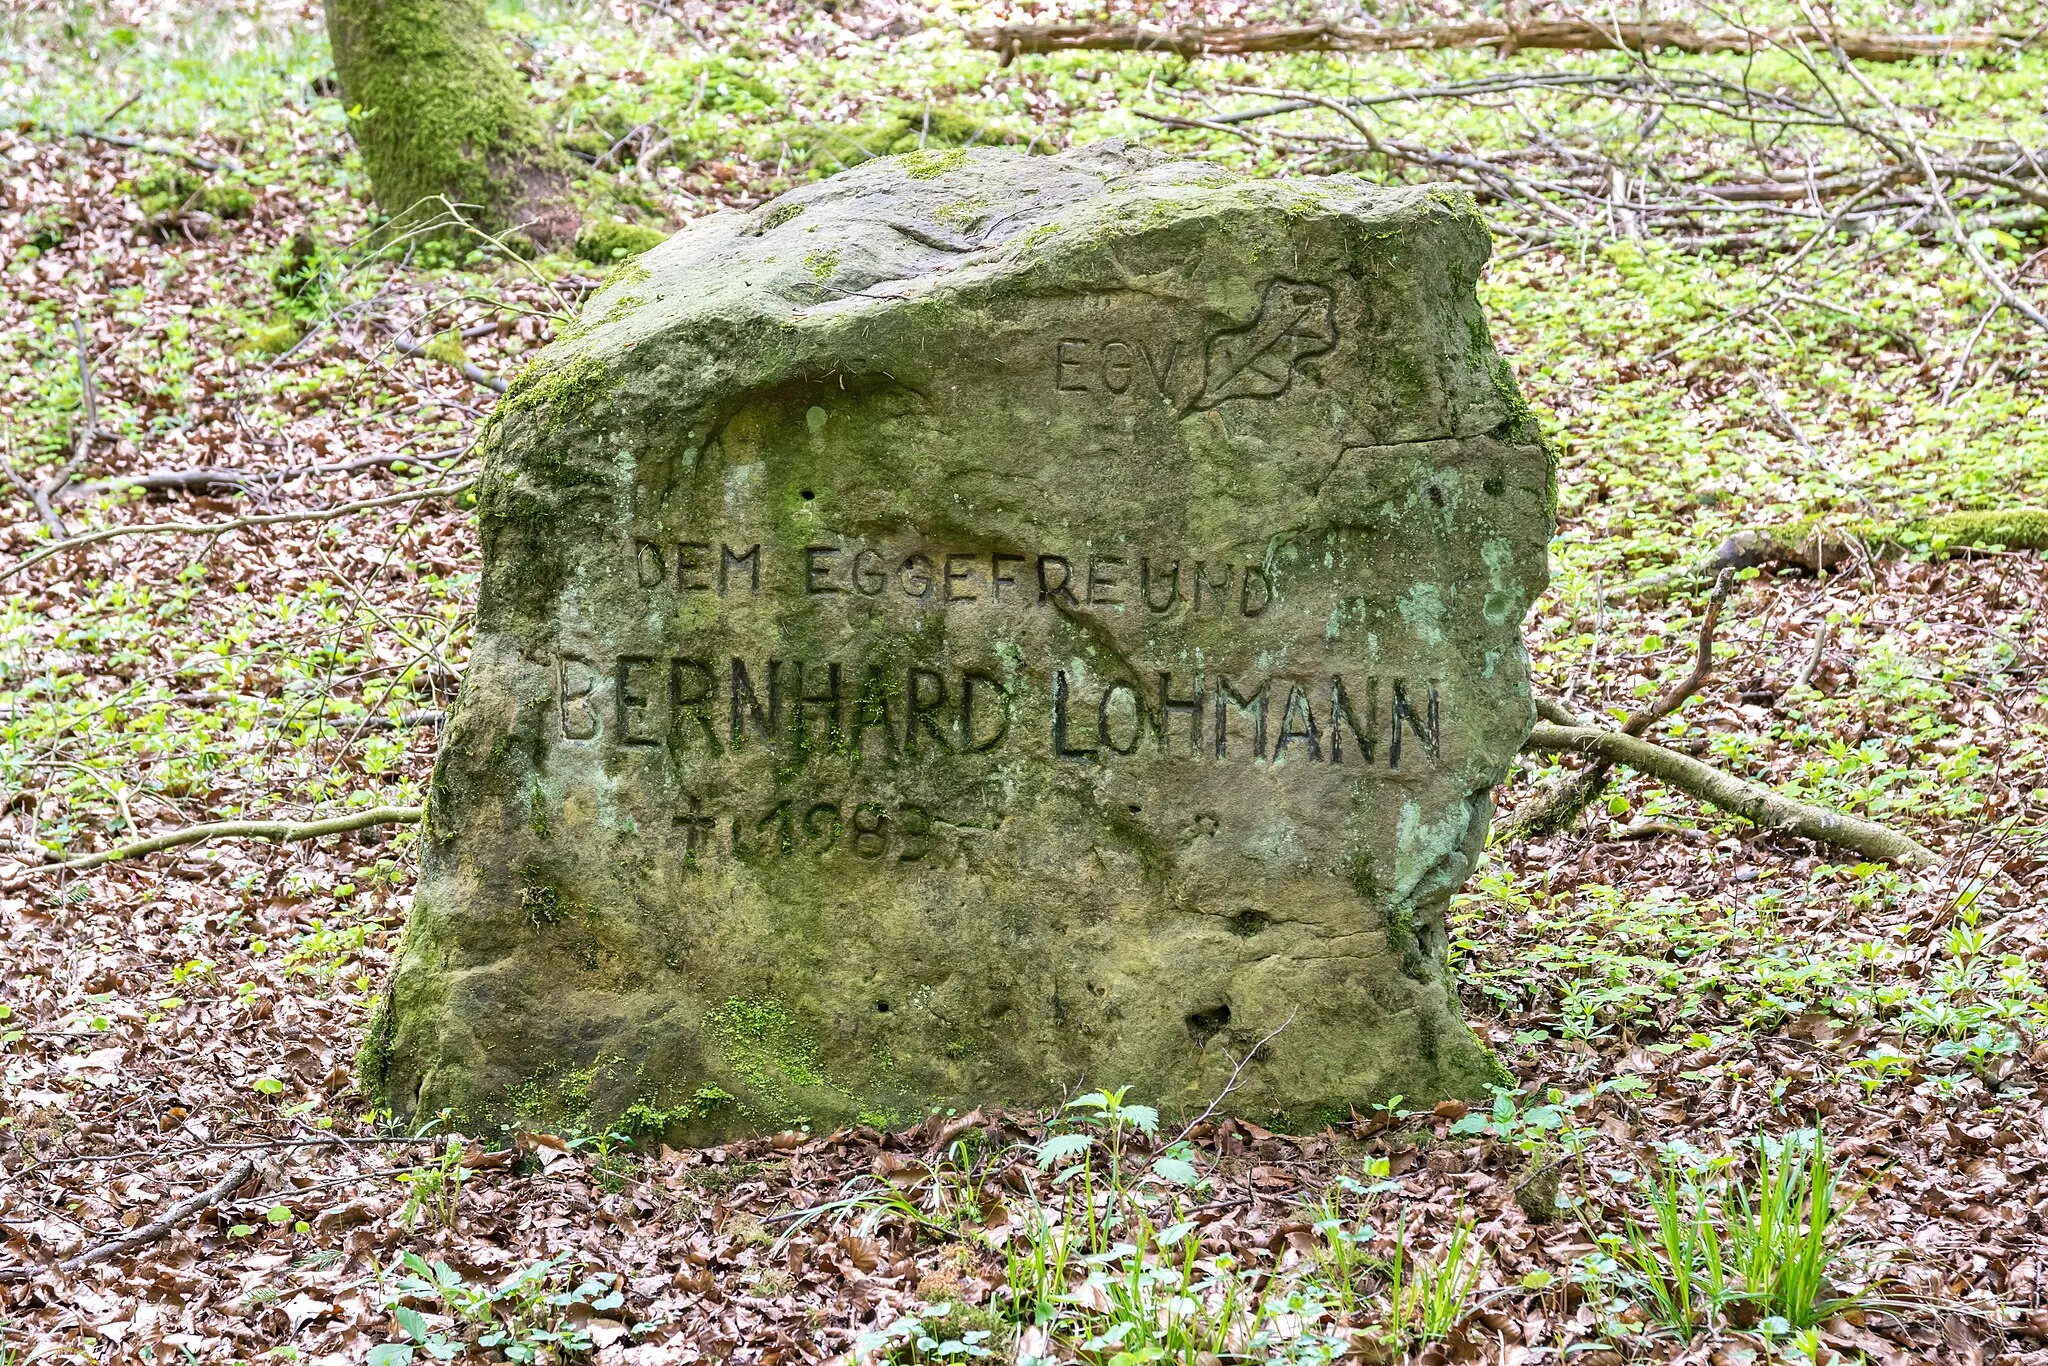 Photo showing: Gedenkstein für Bernhard Lohmann am Eggeweg in Bad Driburg